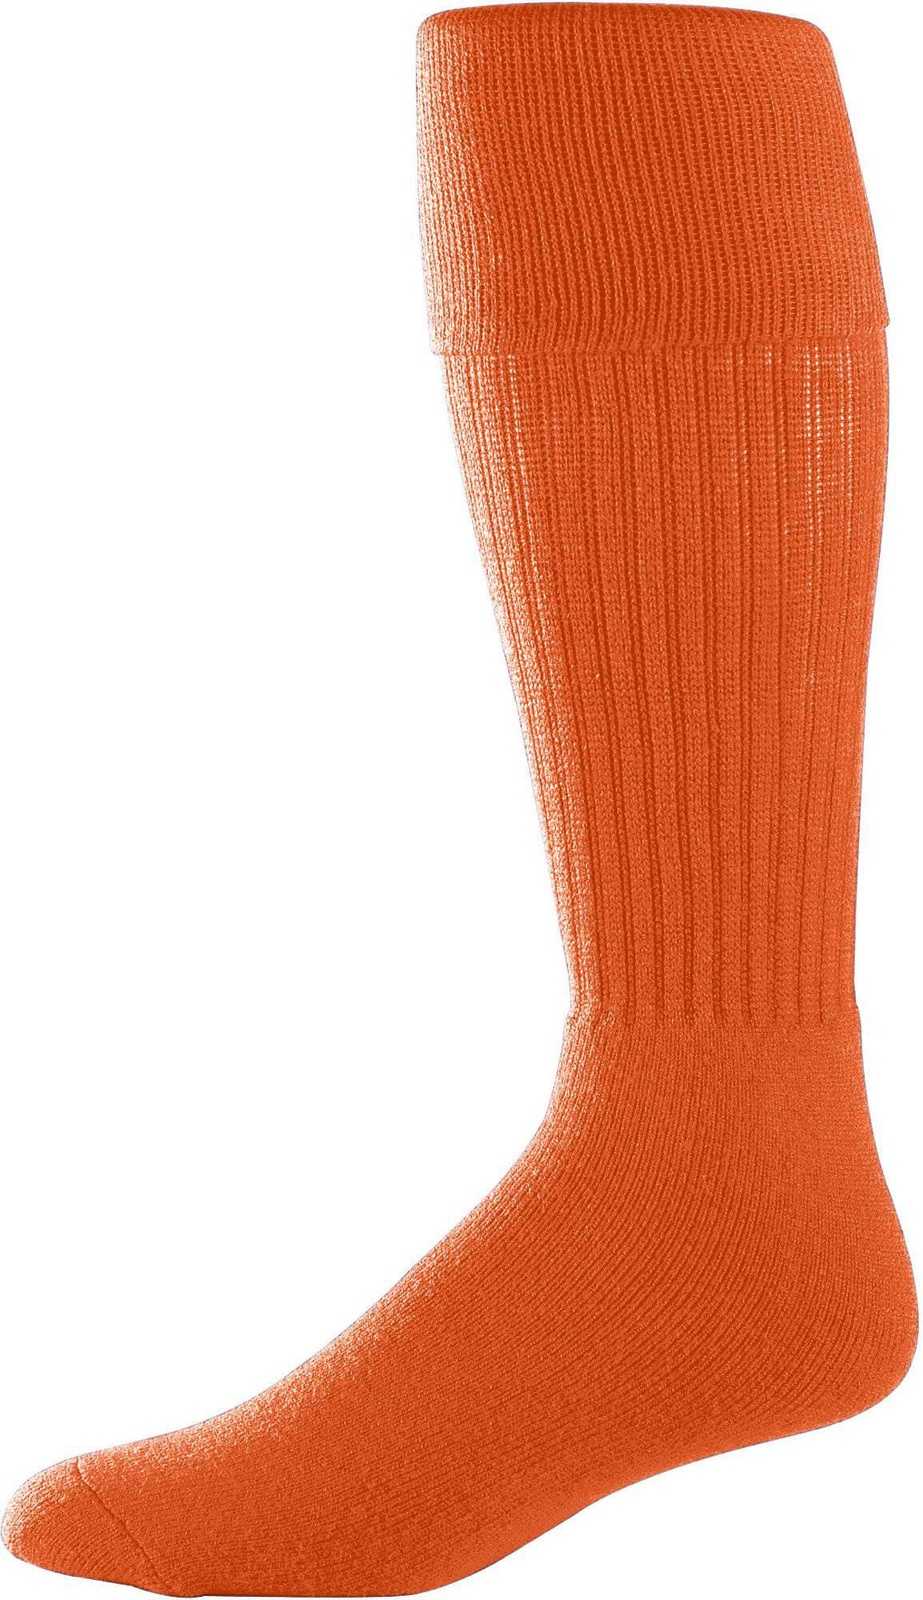 Augusta 6031 Soccer Knee High Socks - Orange - HIT a Double